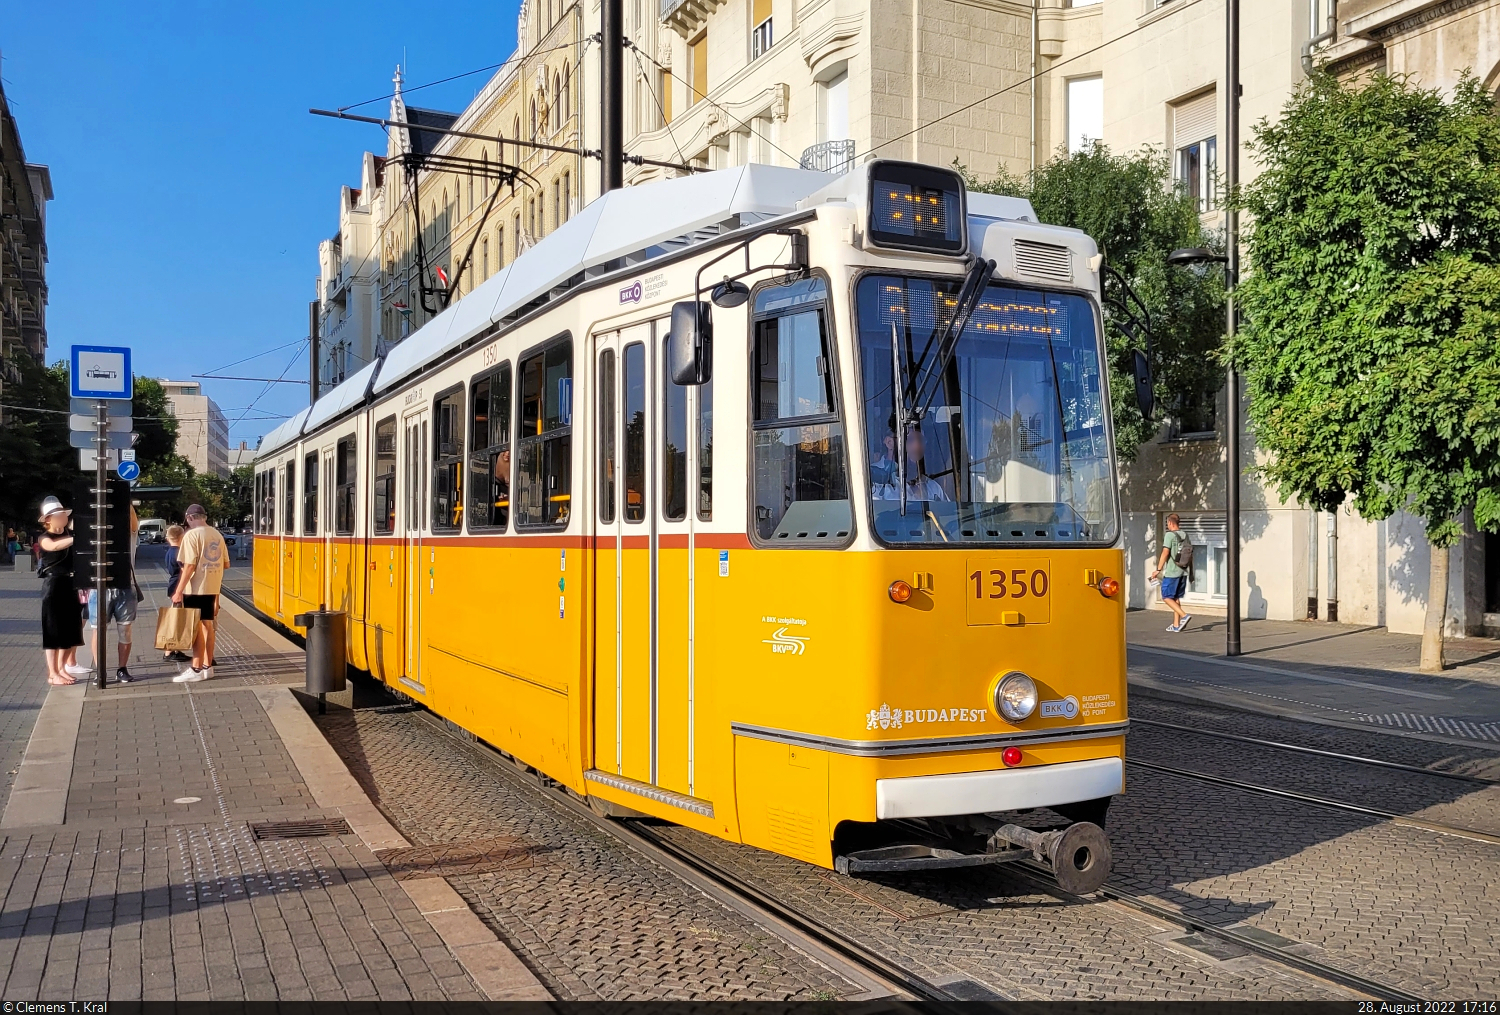 ÖPNV in Budapest (HU)
Die Straßenbahn-Linie 2 ist für Touristen ideal. In historischen Fahrzeugen geht es quer durch die Stadt, vorbei an sehenswerten Gebäuden. Als Beispiel dient das Parlament, dessen Haltestelle gerade ein Gelenktriebwagen vom Typ Ganz KCSV–7 mit der Nummer 1350 verlässt.

🧰 BKK (BKV Zrt.)
🚋 Linie 2B Jászai Mari tér–Pesterzsébet, Pacsirtatelep
🕓 28.8.2022 | 17:16 Uhr